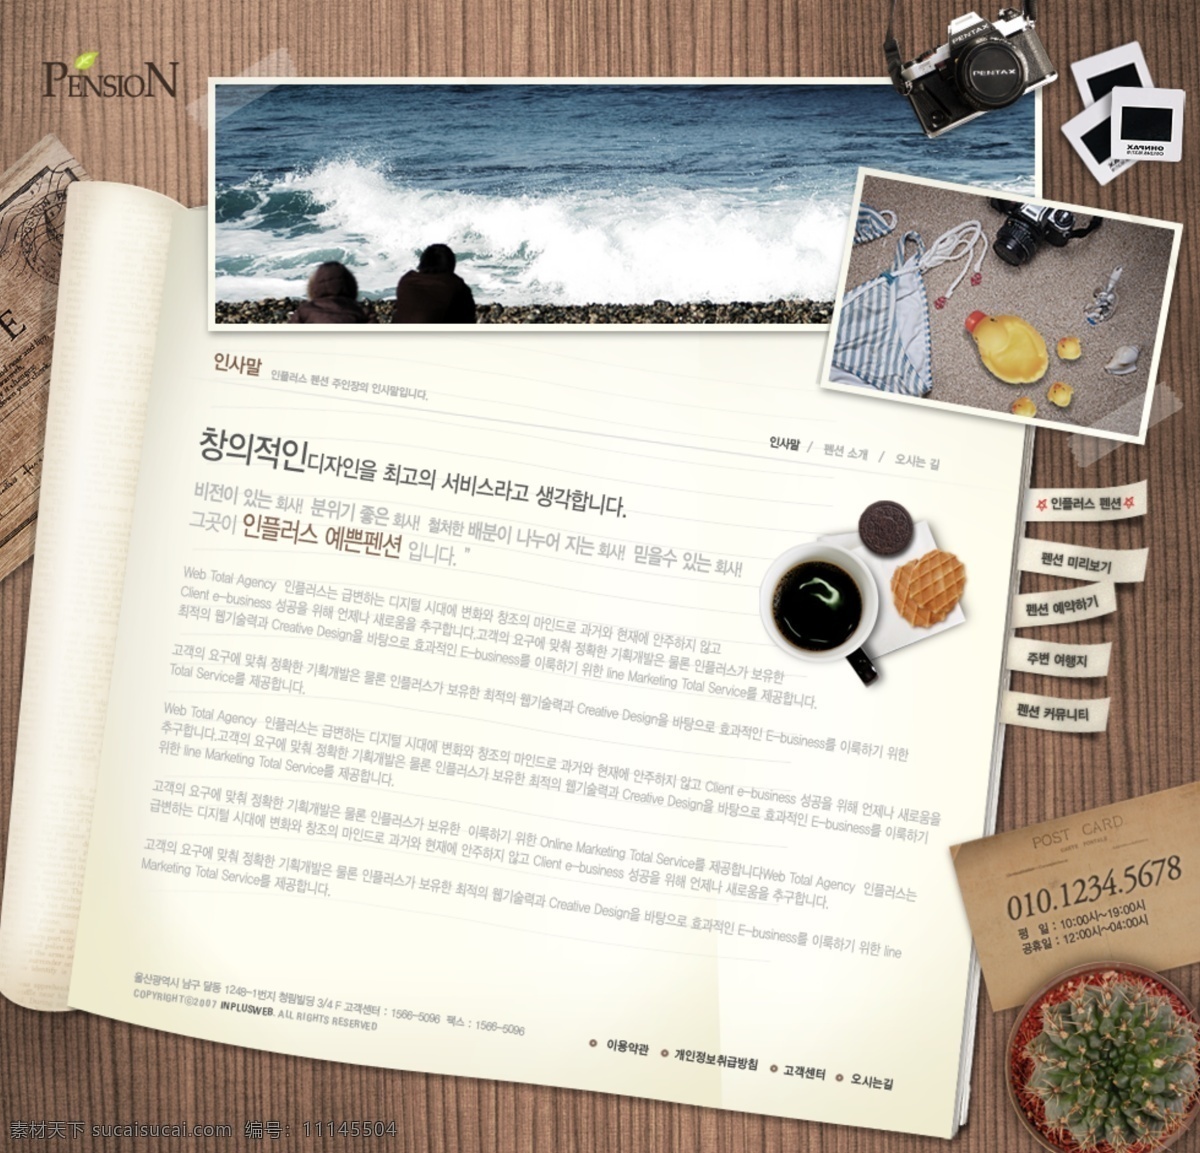 大海 浪花 旅游模板 沙滩 网页模板 相机 源文件 旅游 模板 模板下载 韩文模板 psd源文件